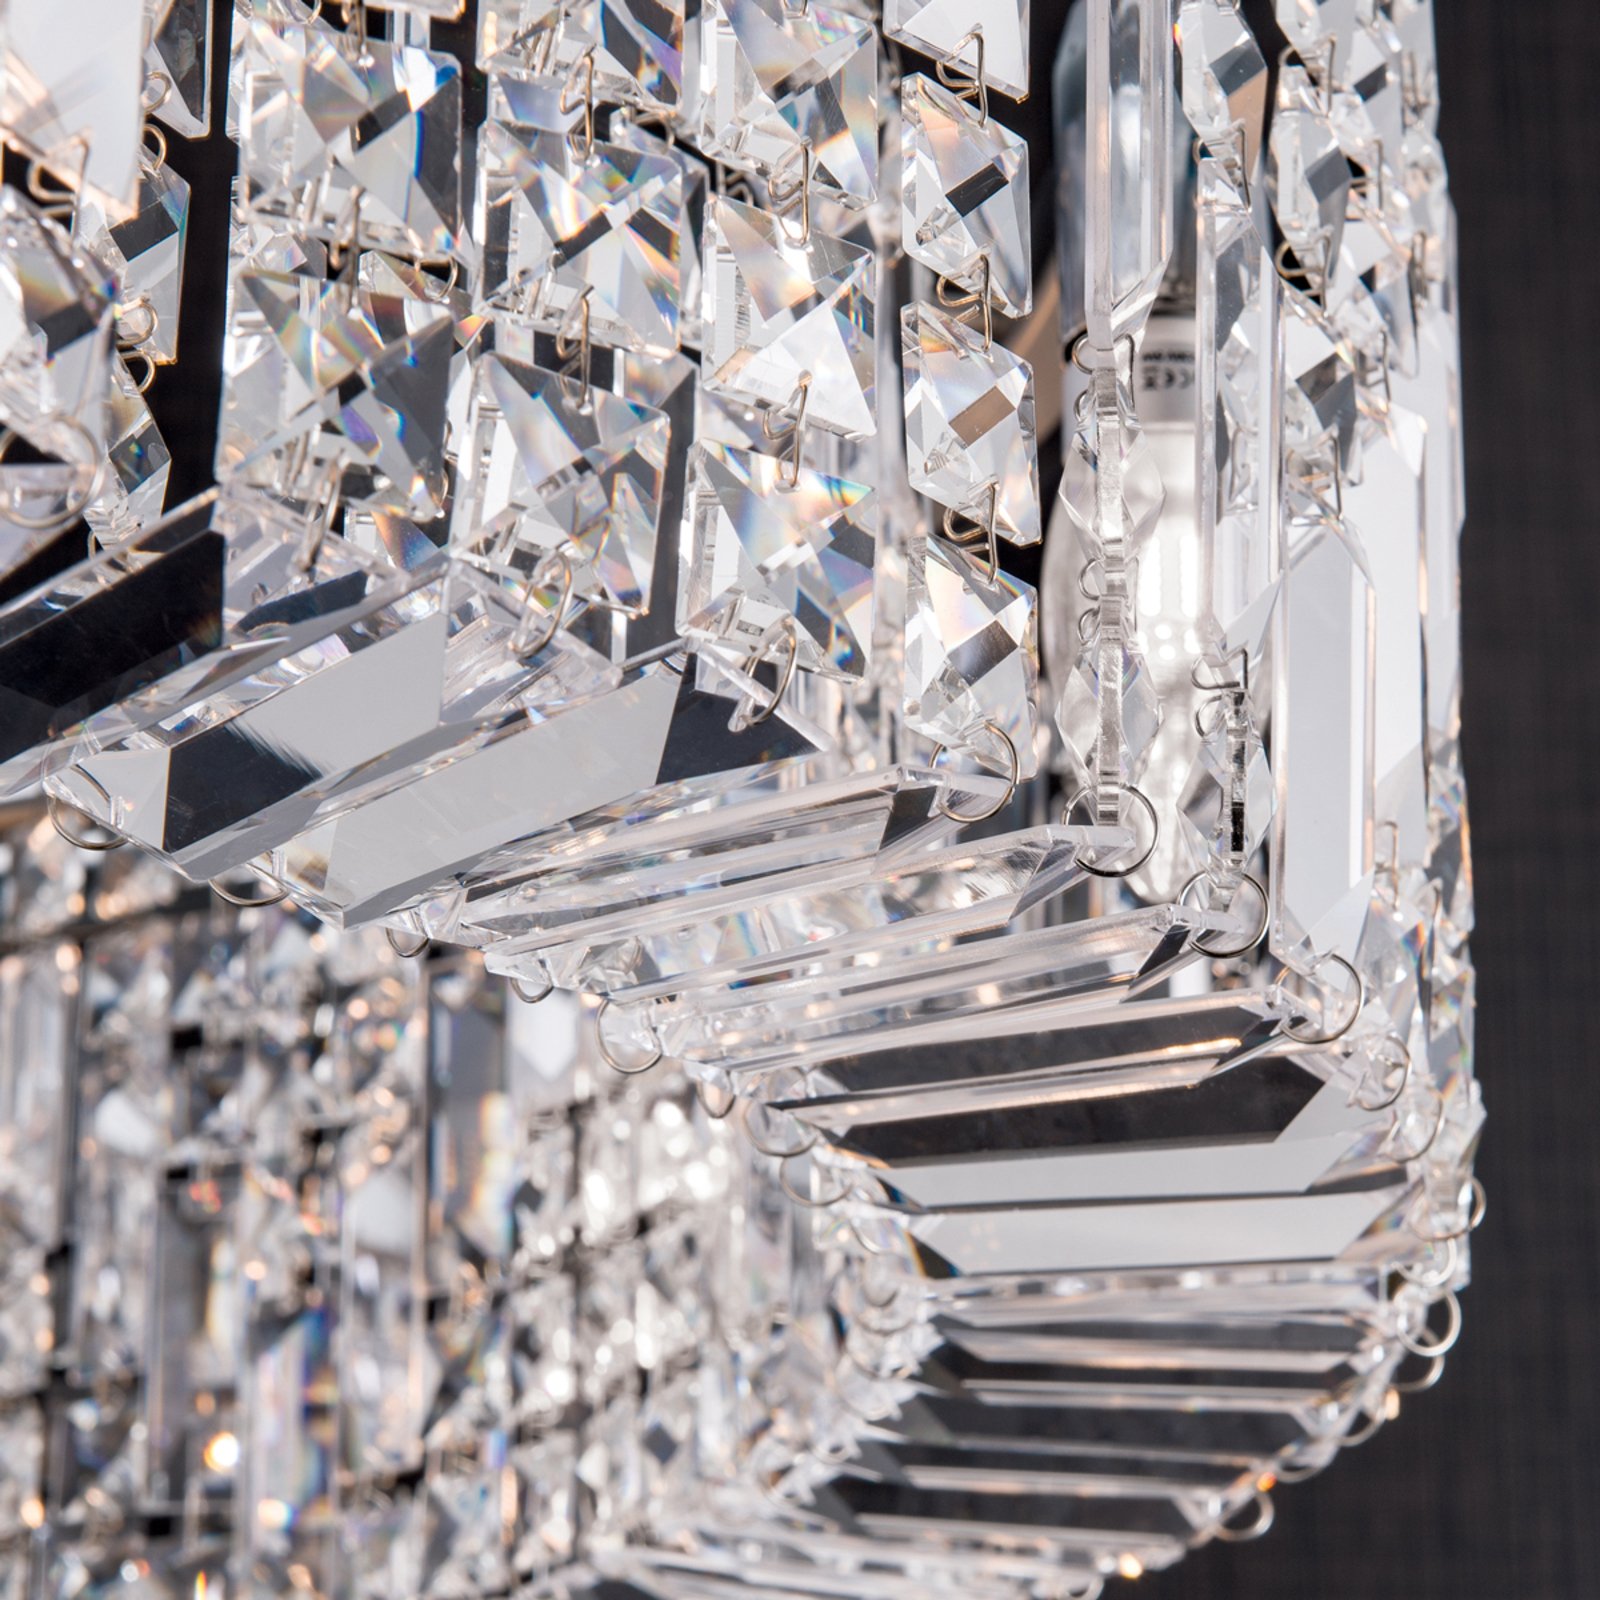 Fonkelende kristallen hanglamp Ring 80 cm chroom